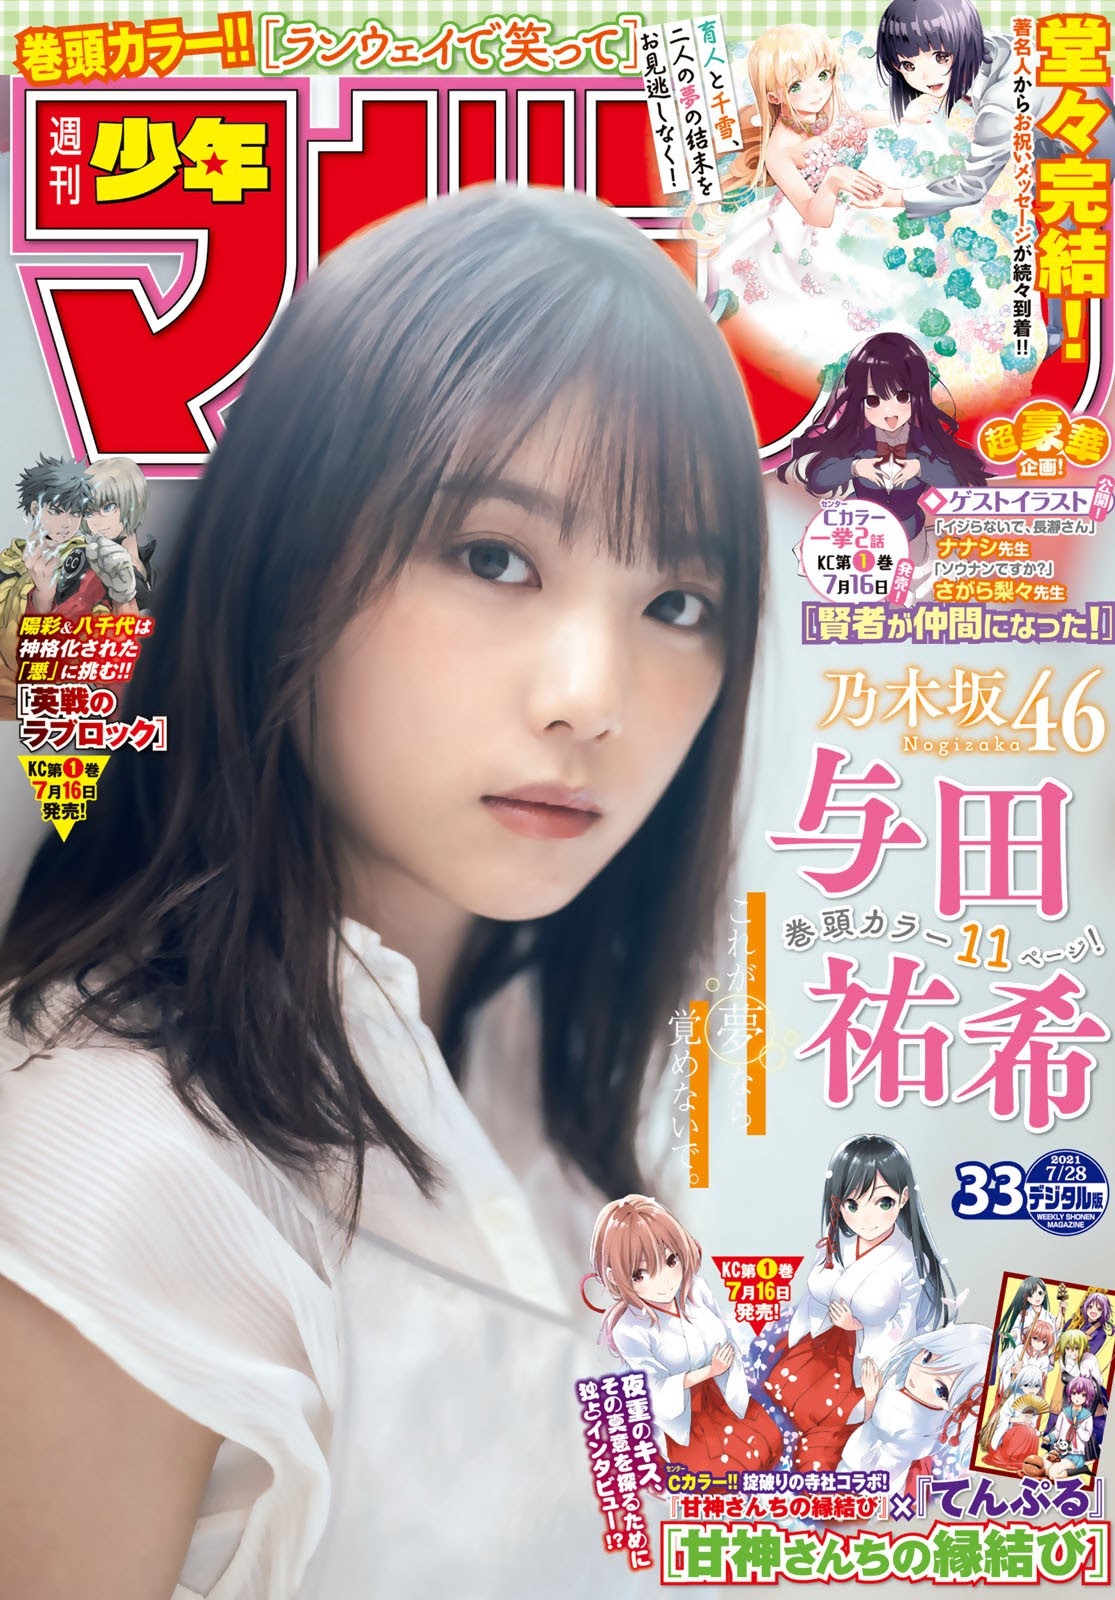 Yuki Yoda 与田祐希, Shonen Magazine 2021 No.33 (週刊少年マガジン 2021年33号)